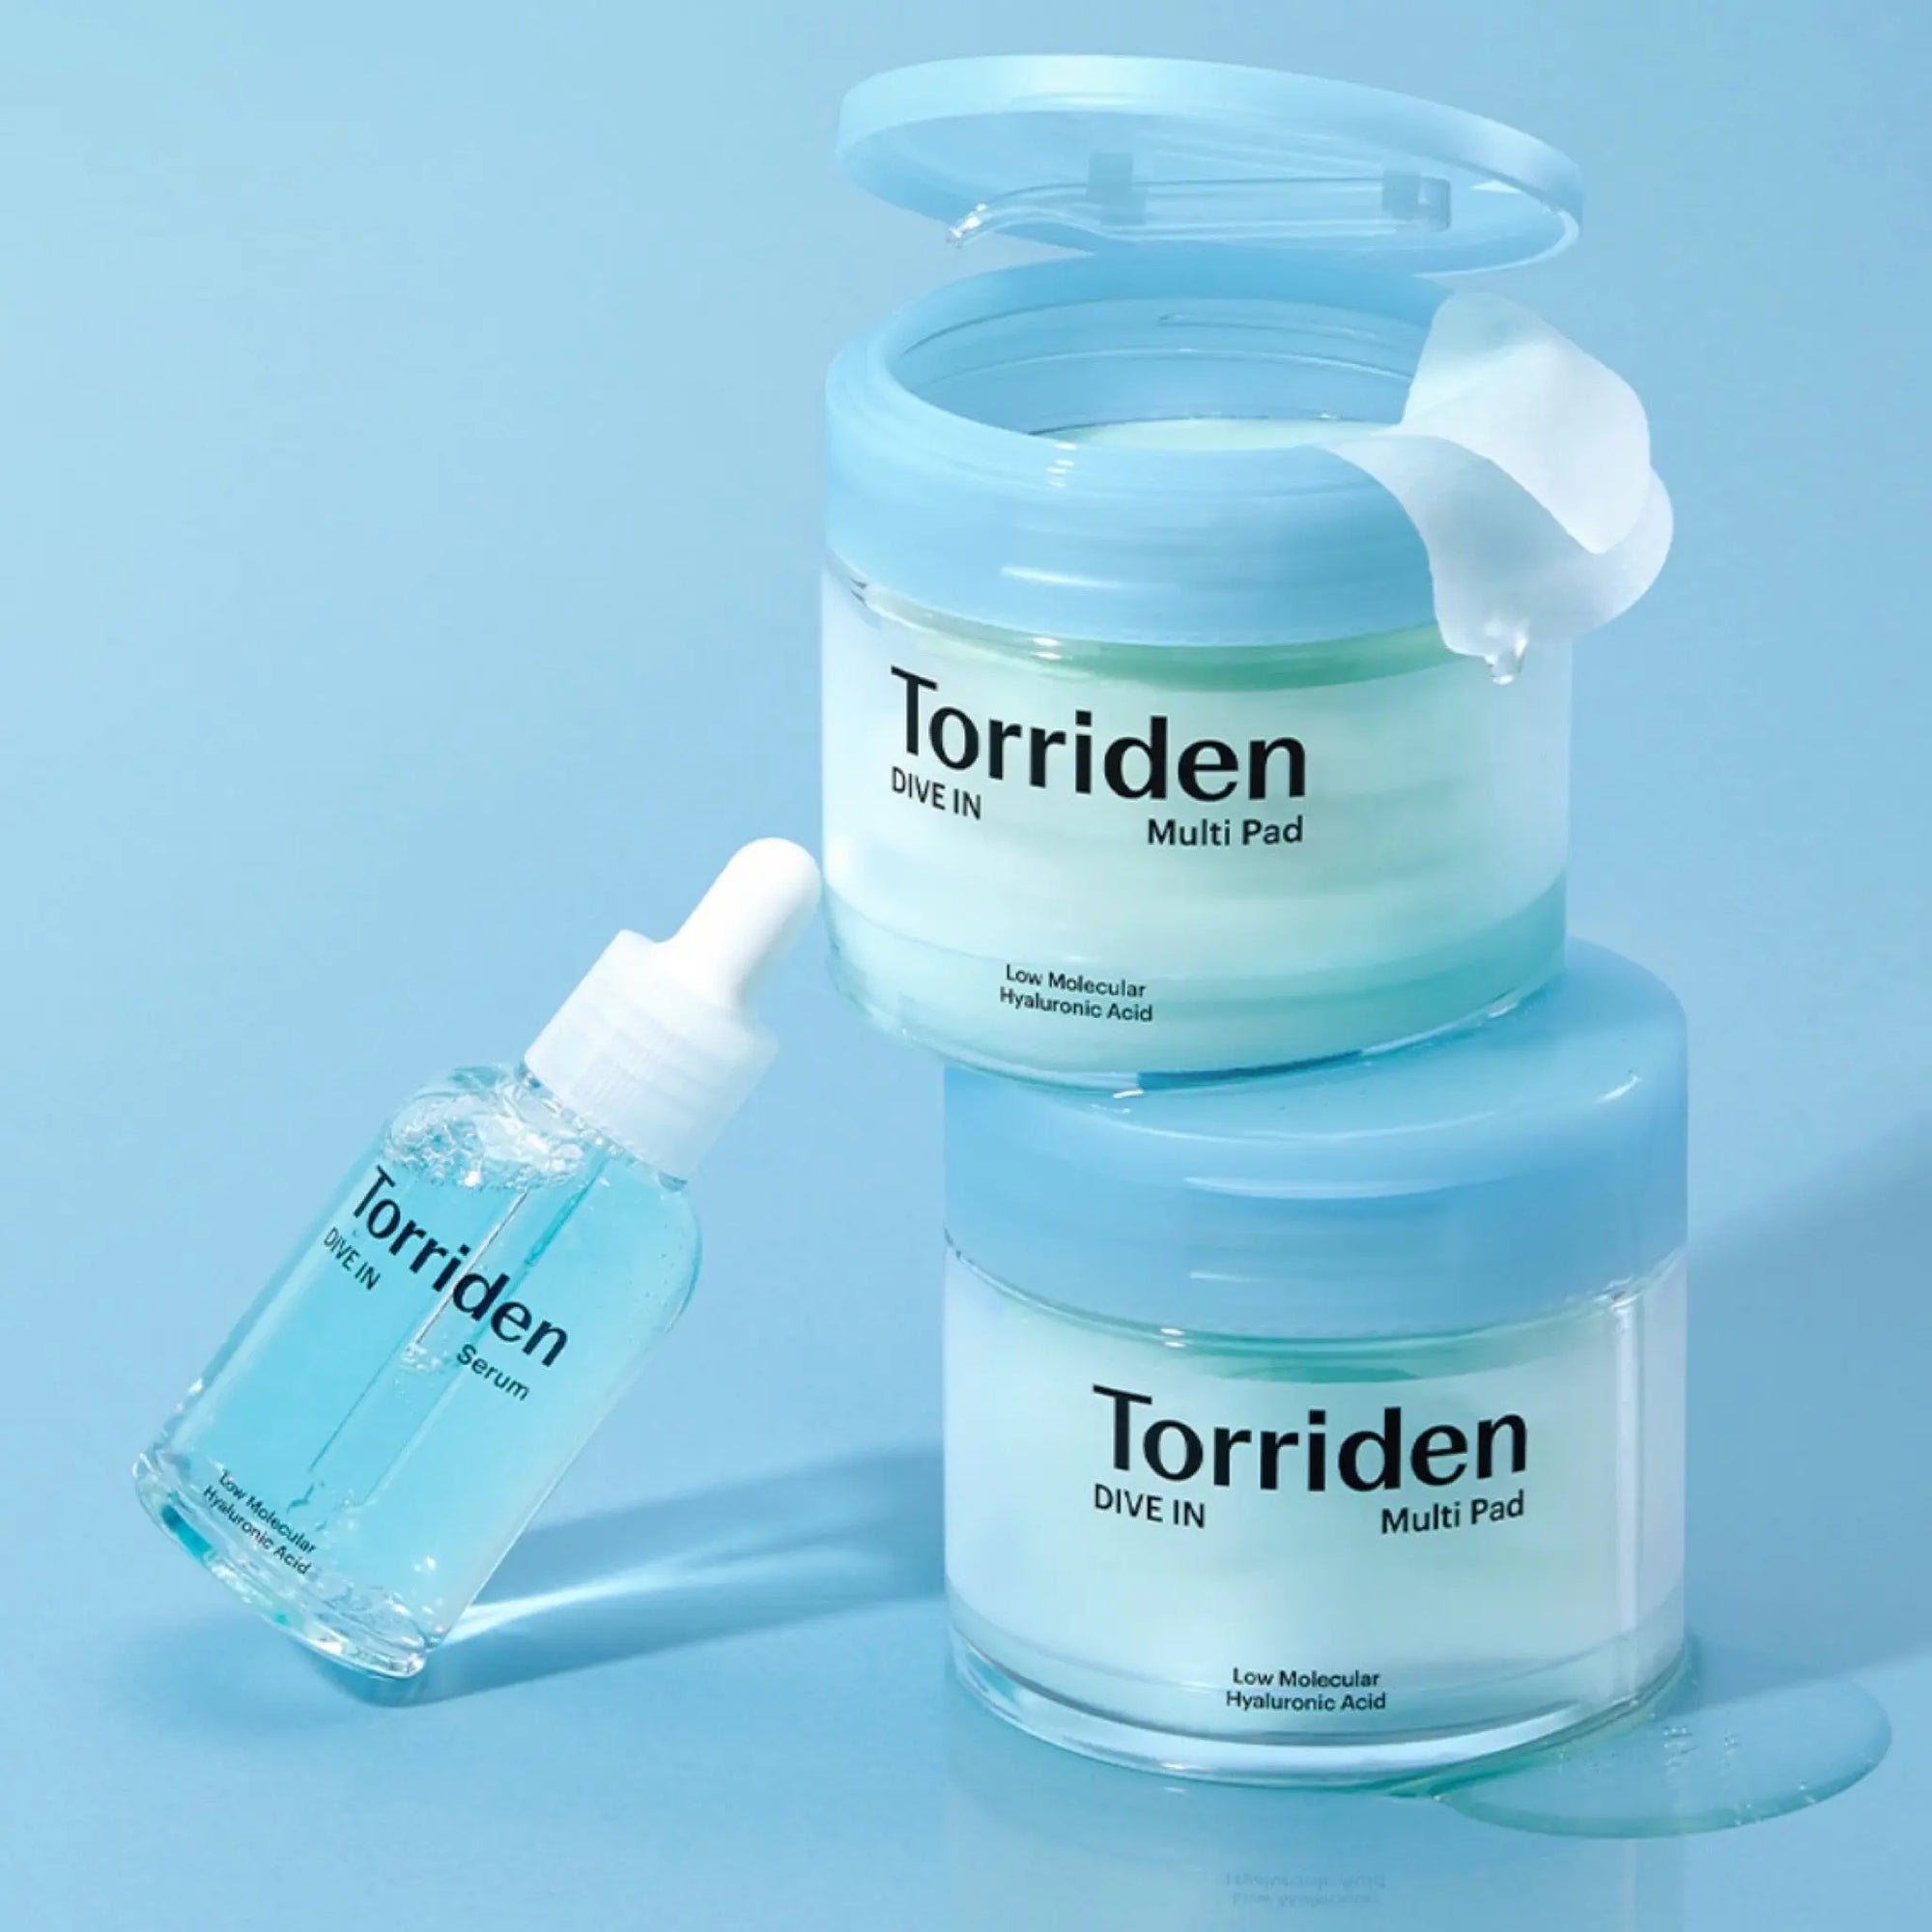 Torriden - Dive-in Low Molecule Hyaluronic acid Multi Pad (80ea) Torriden